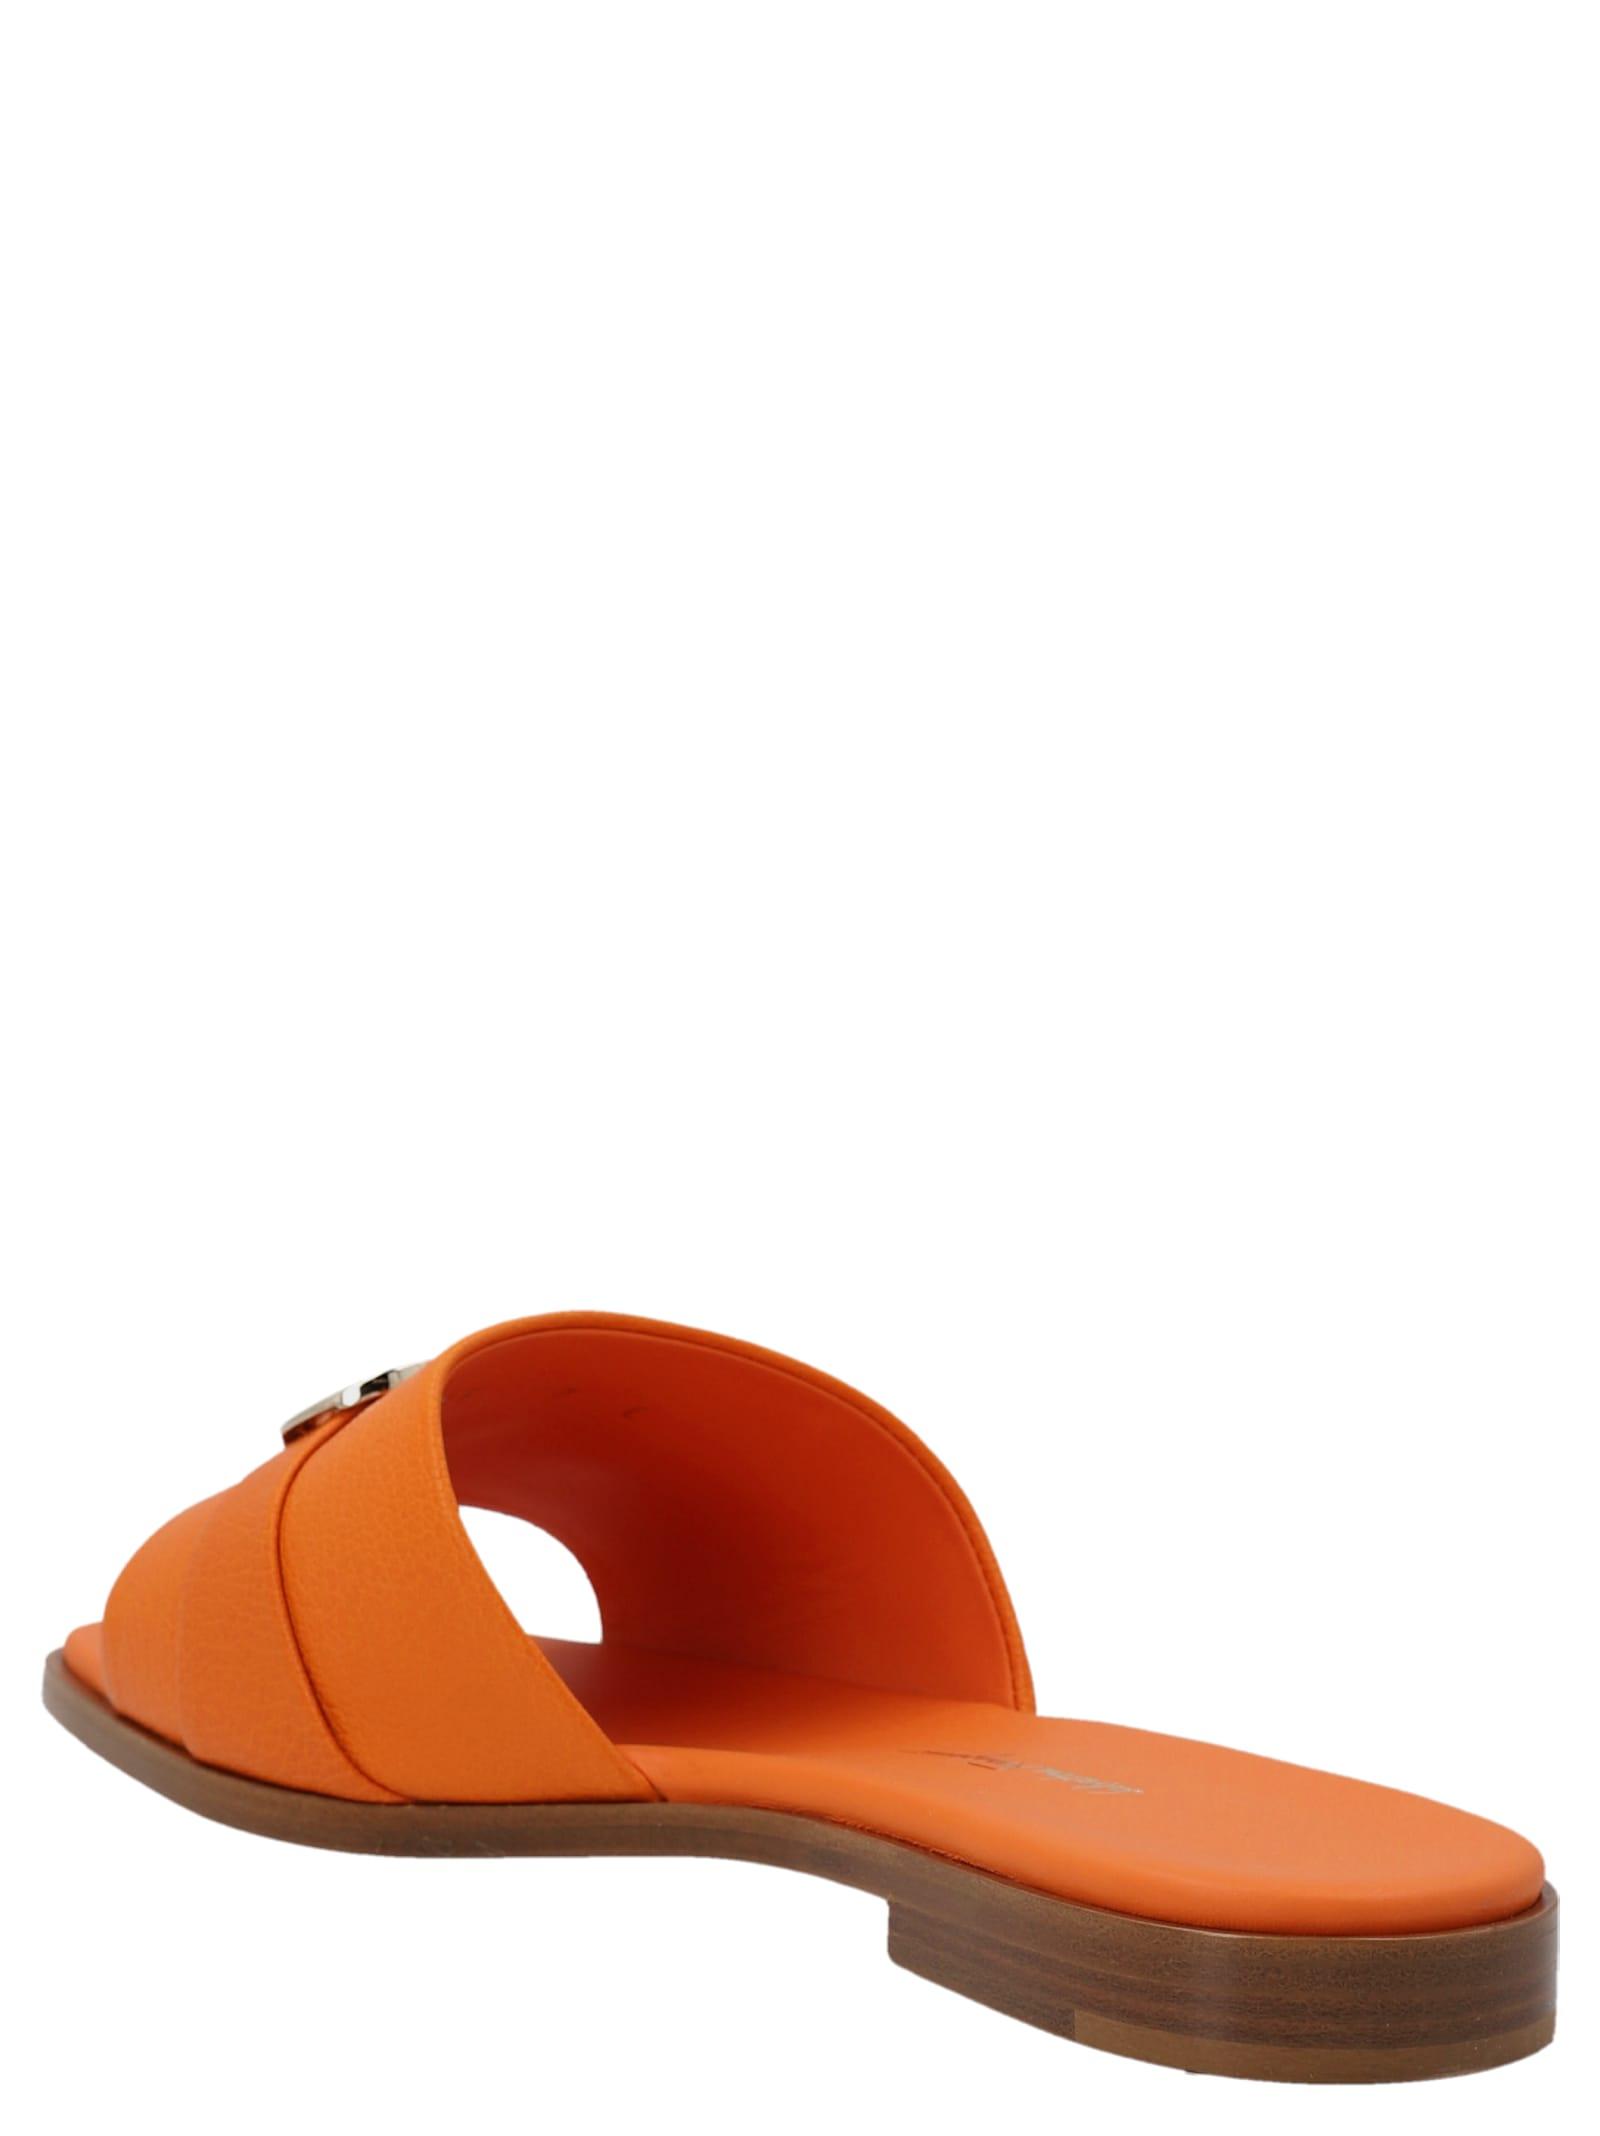 Ferragamo 'orla 10' Sandals in Orange | Lyst